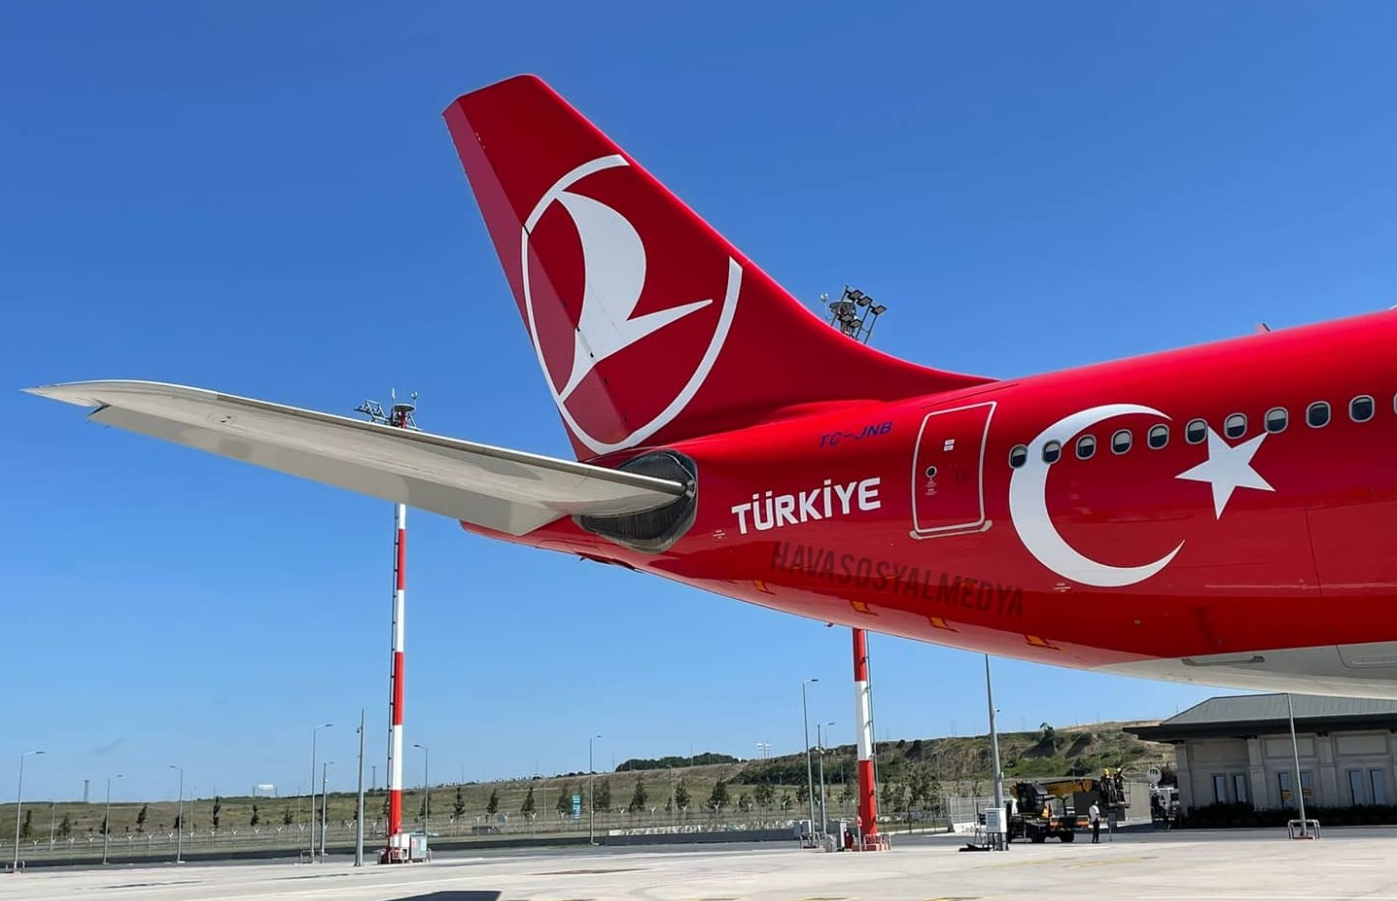 الخطوط الجوية التركية تحدد 11 نيسان موعدا لاستئناف رحلاتها الى مطار السليمانية